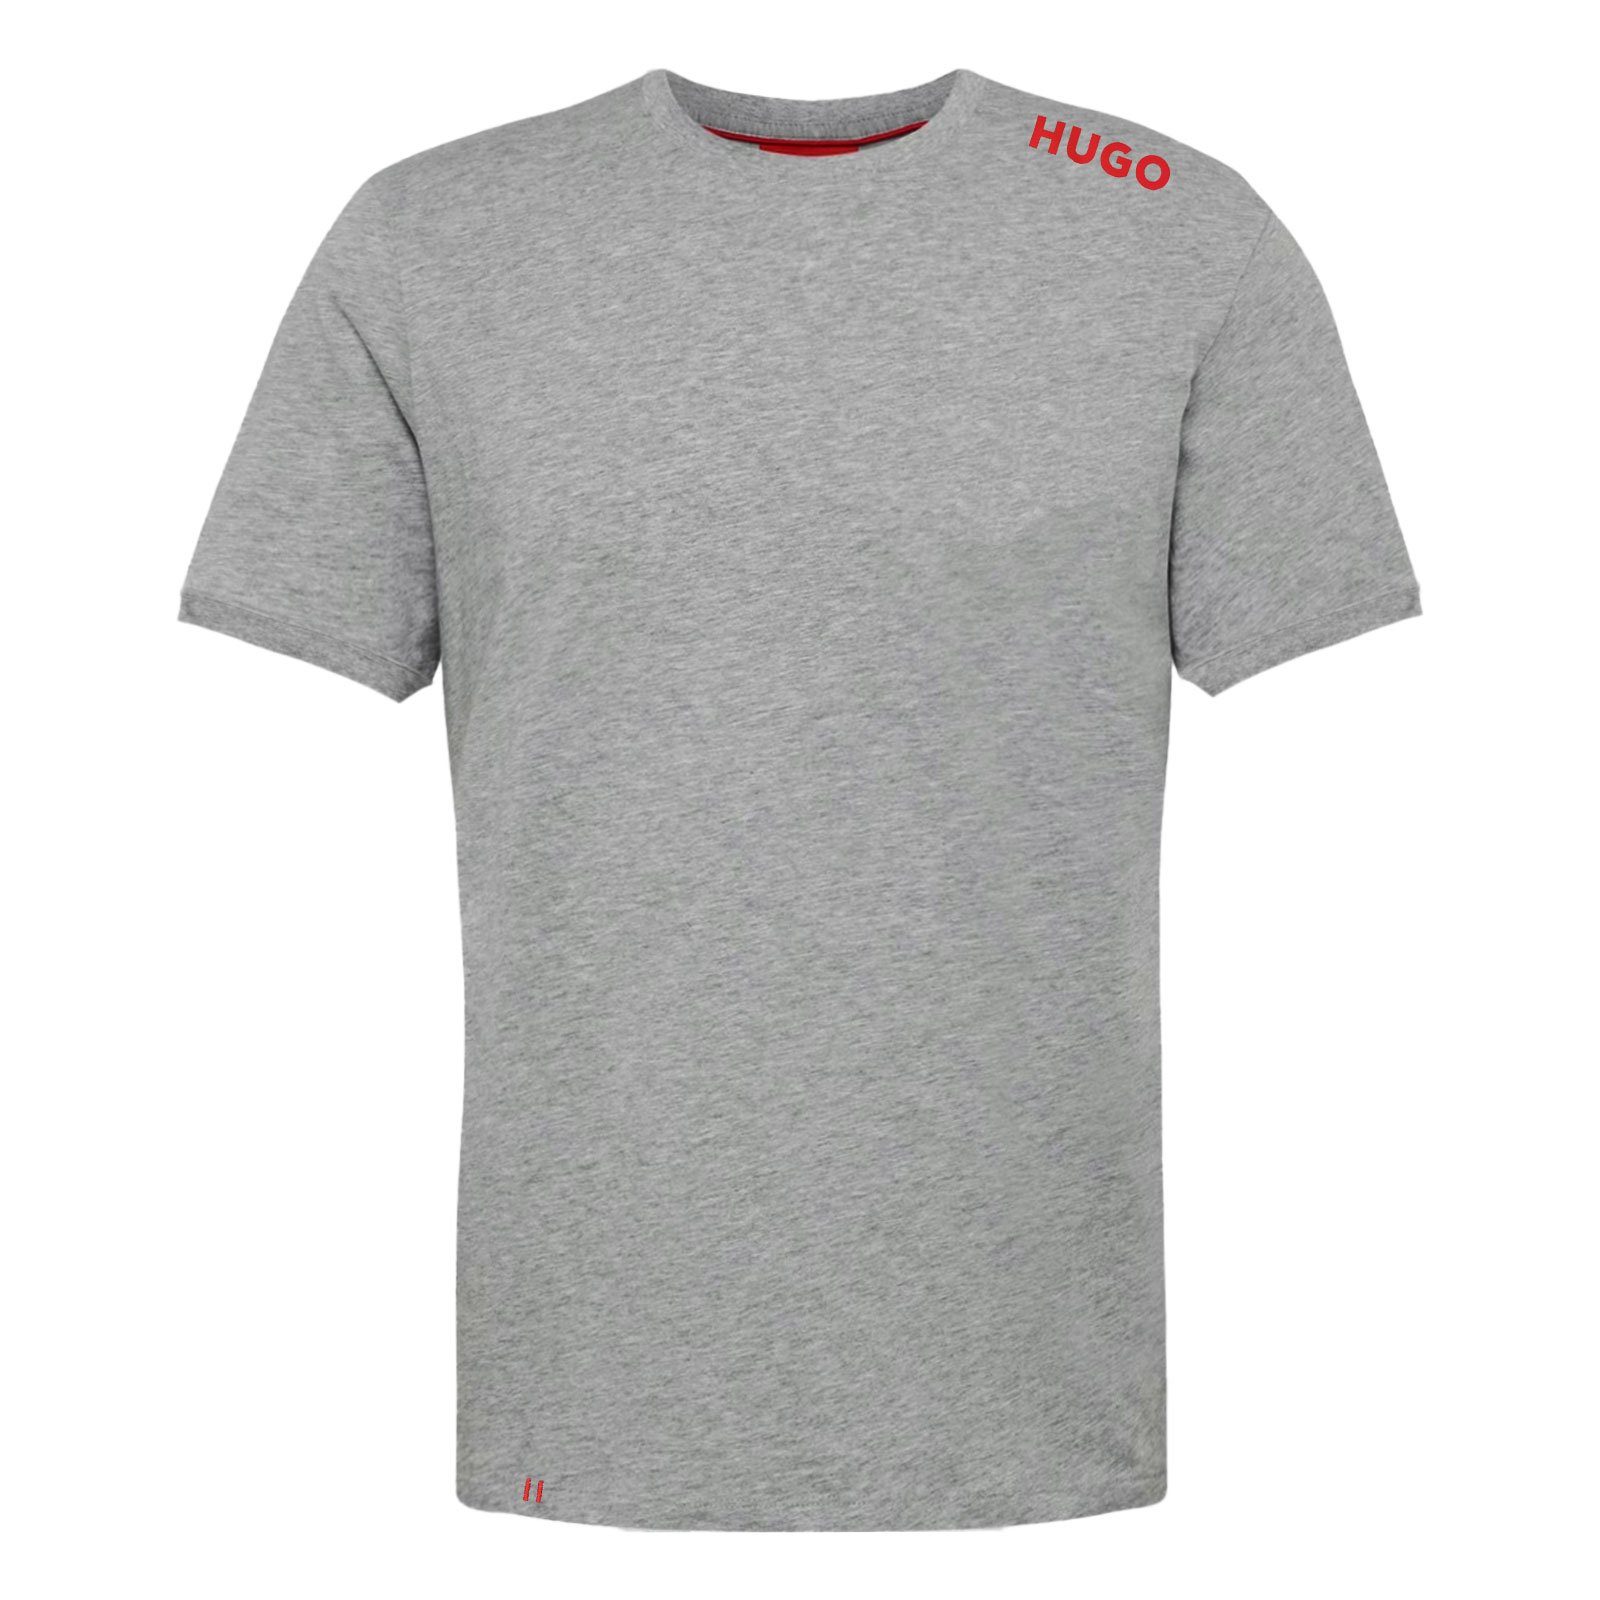 HUGO Labelled T-Shirt 035 der Schulter mit grey T-Shirt Logo-Druck auf